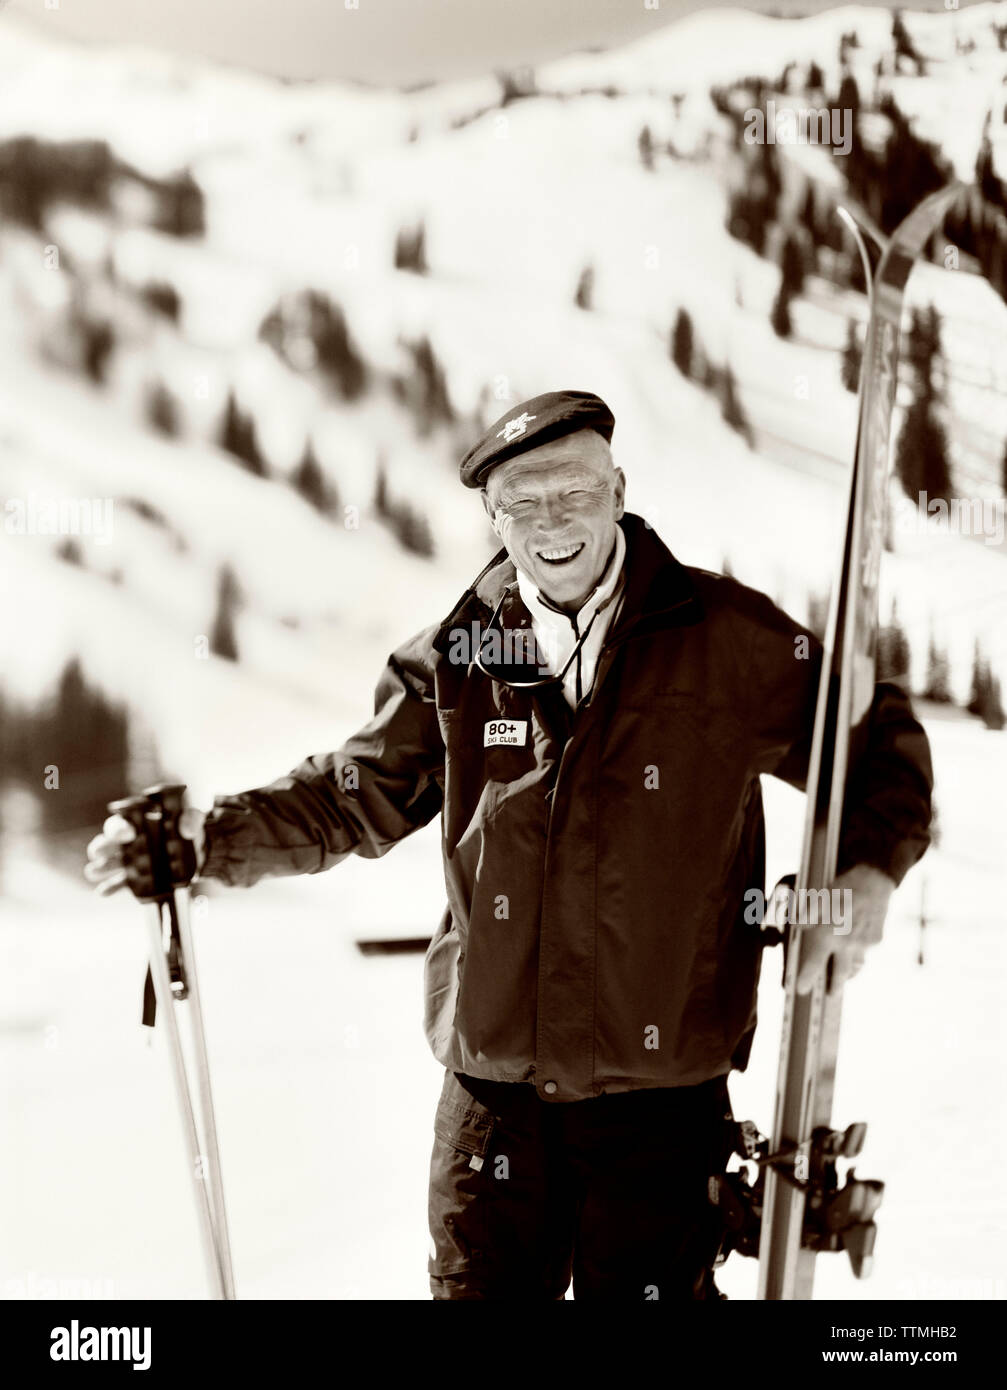 USA, Utah, Portrait eines älteren Mann, Skier und Stöcke, 80 + Ski Club, Alta Ski Resort (B&W) Stockfoto